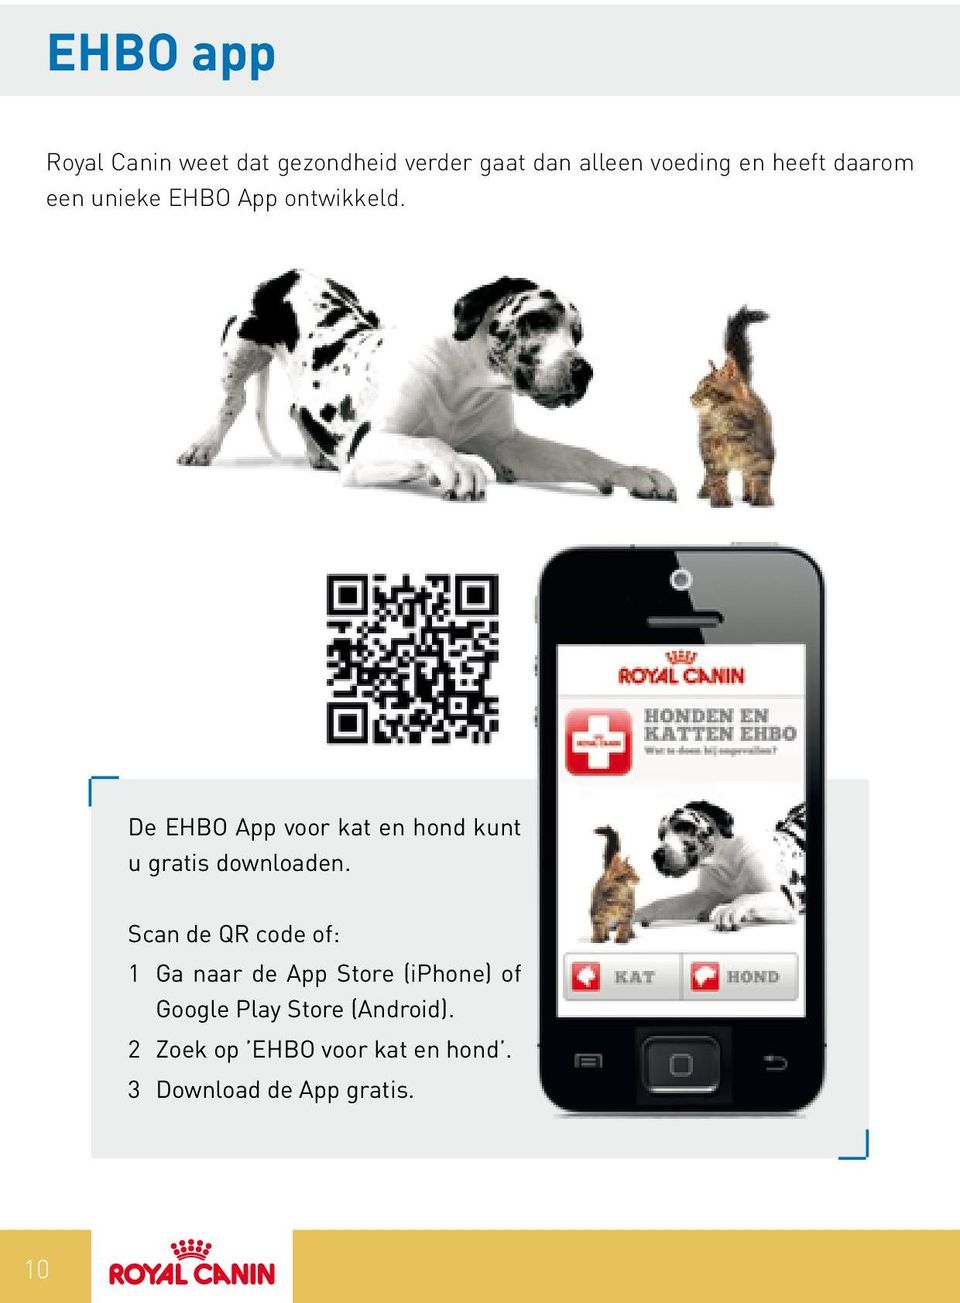 De EHBO App voor kat en hond kunt u gratis downloaden.